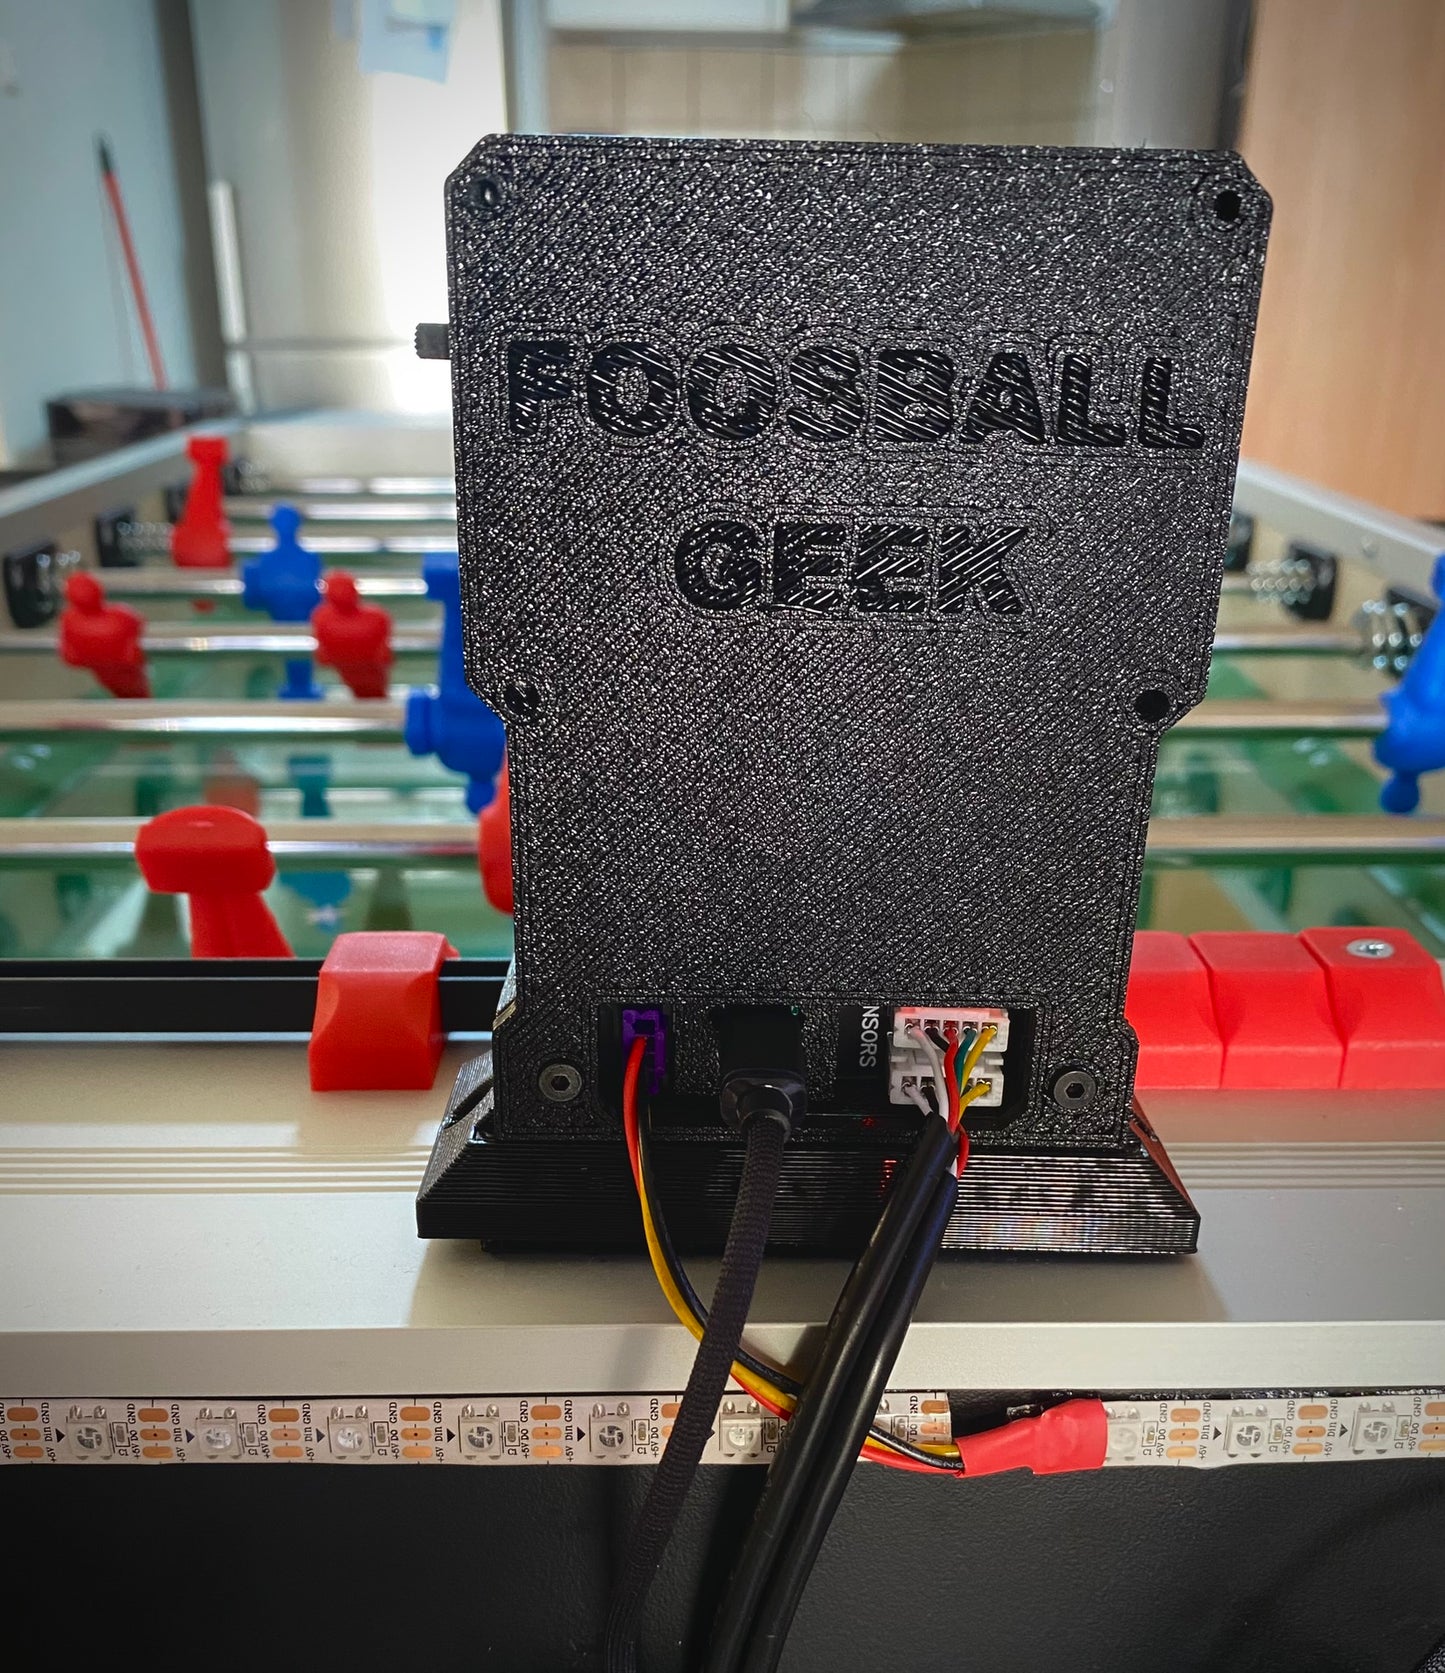 Foosball Digital Scoring System | Electronic Scoreboard | Soccer table